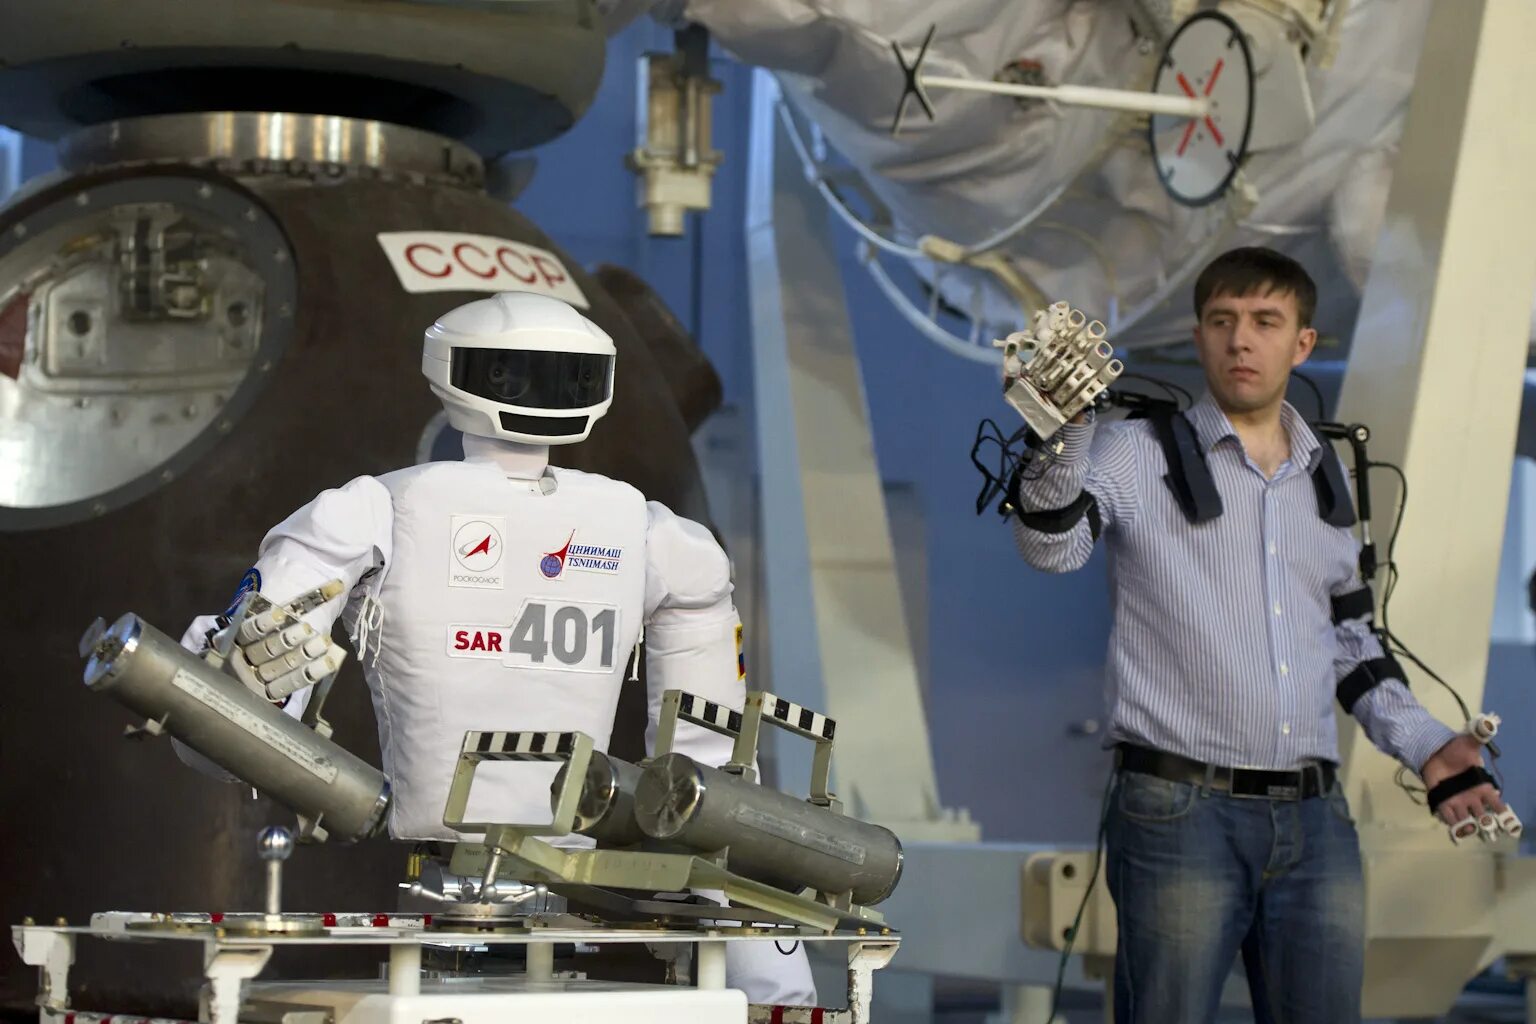 Первый космический робот. SAR-401 робот. Роботы ученые. Робототехника в космосе.